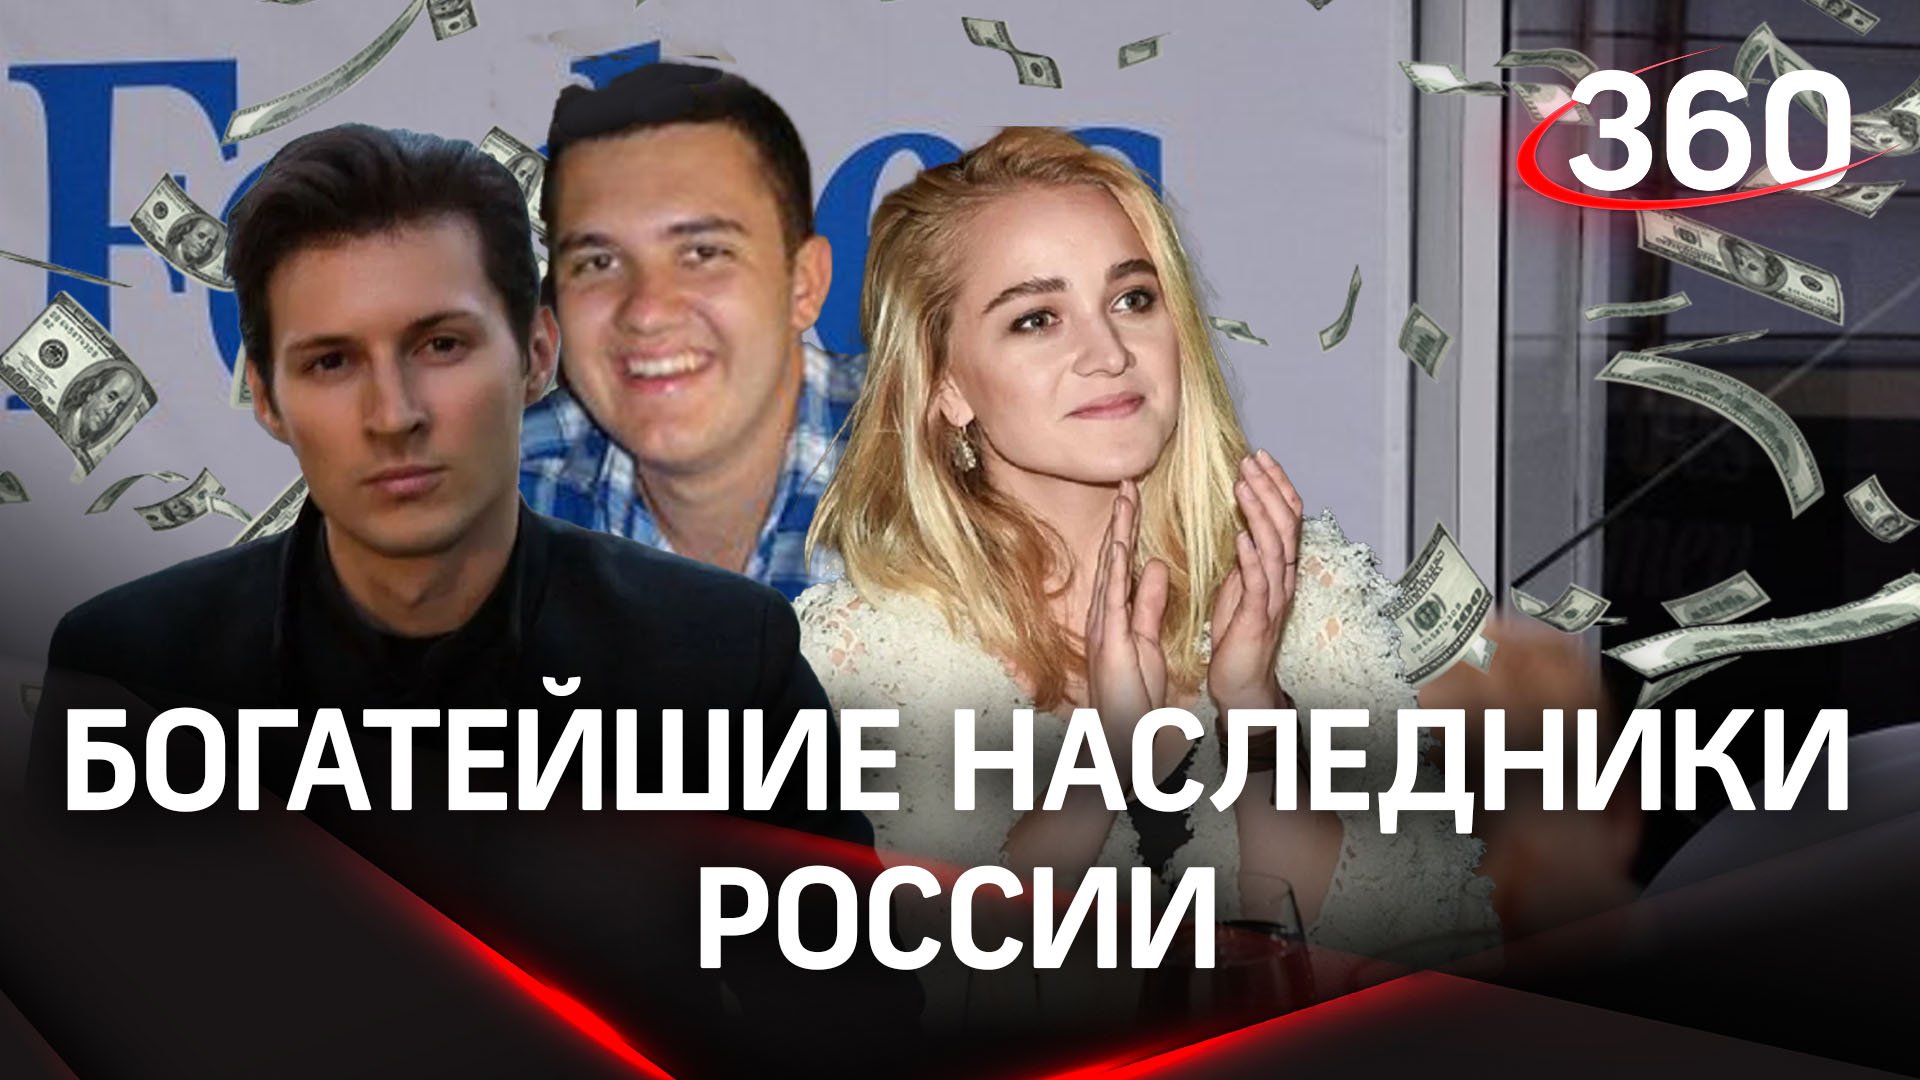 Наследники Павла Дурова и других российских миллиардеров - список Форбс